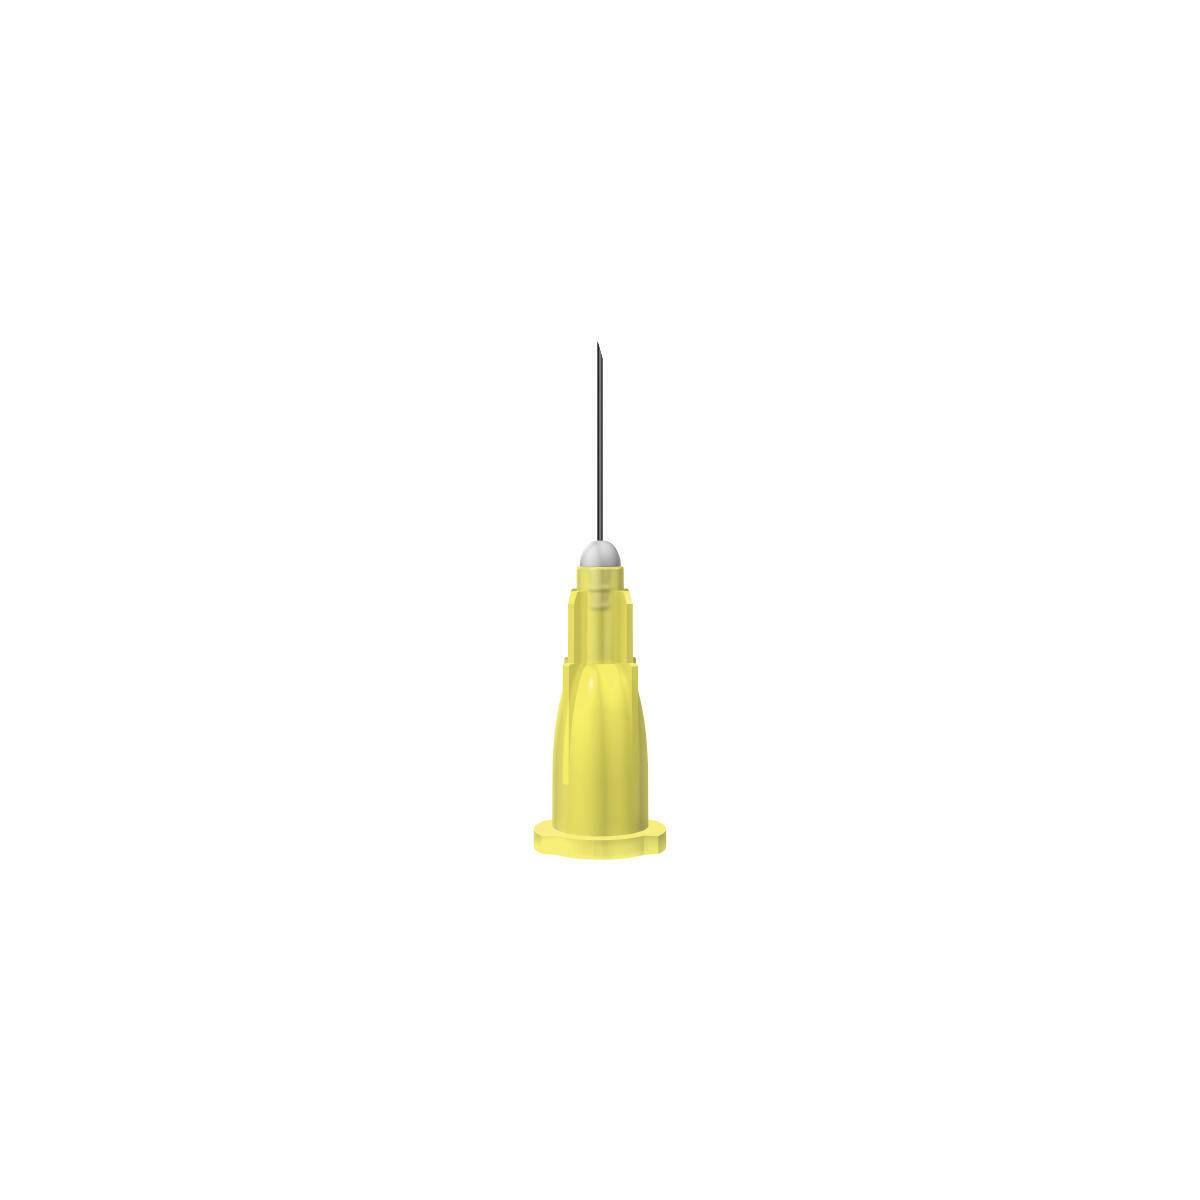 30g Yellow 0.5 Inch Unisharp Needles UY UKMEDI.CO.UK